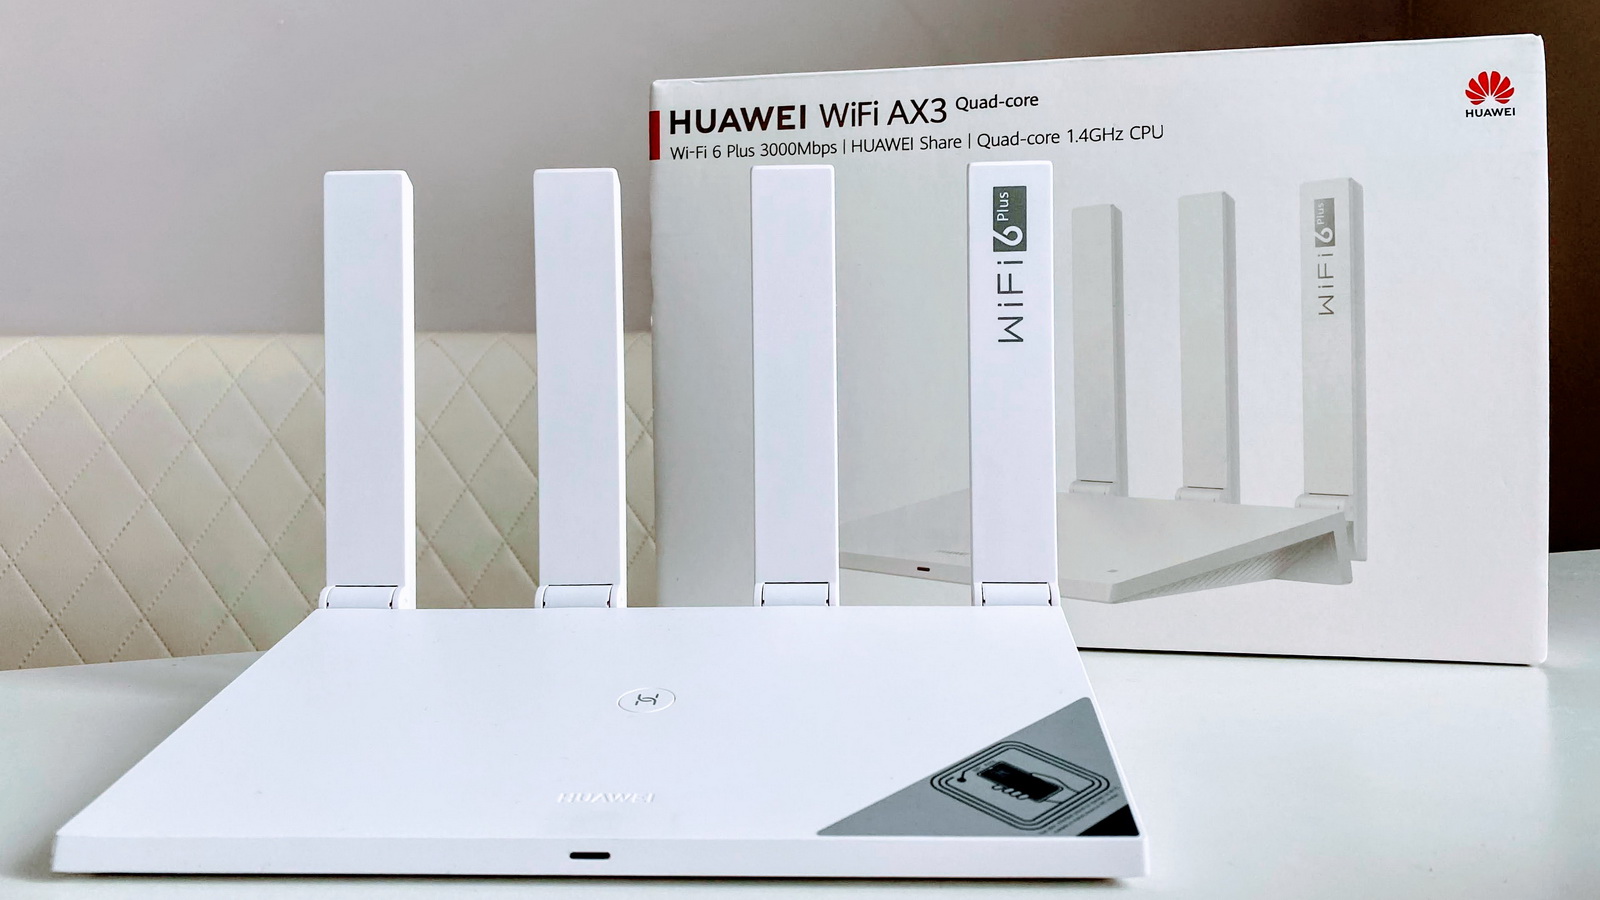 Huawei ax3 купить. Wi-Fi роутер Huawei ax3 ws7200. Роутер Huawei ax3 Quad Core Wi-Fi 6. Wi-Fi роутер Huawei ws7200 (ax3 Quad-Core). Wi-Fi роутер Huawei ws7200 (ax3) Pro ax3000.